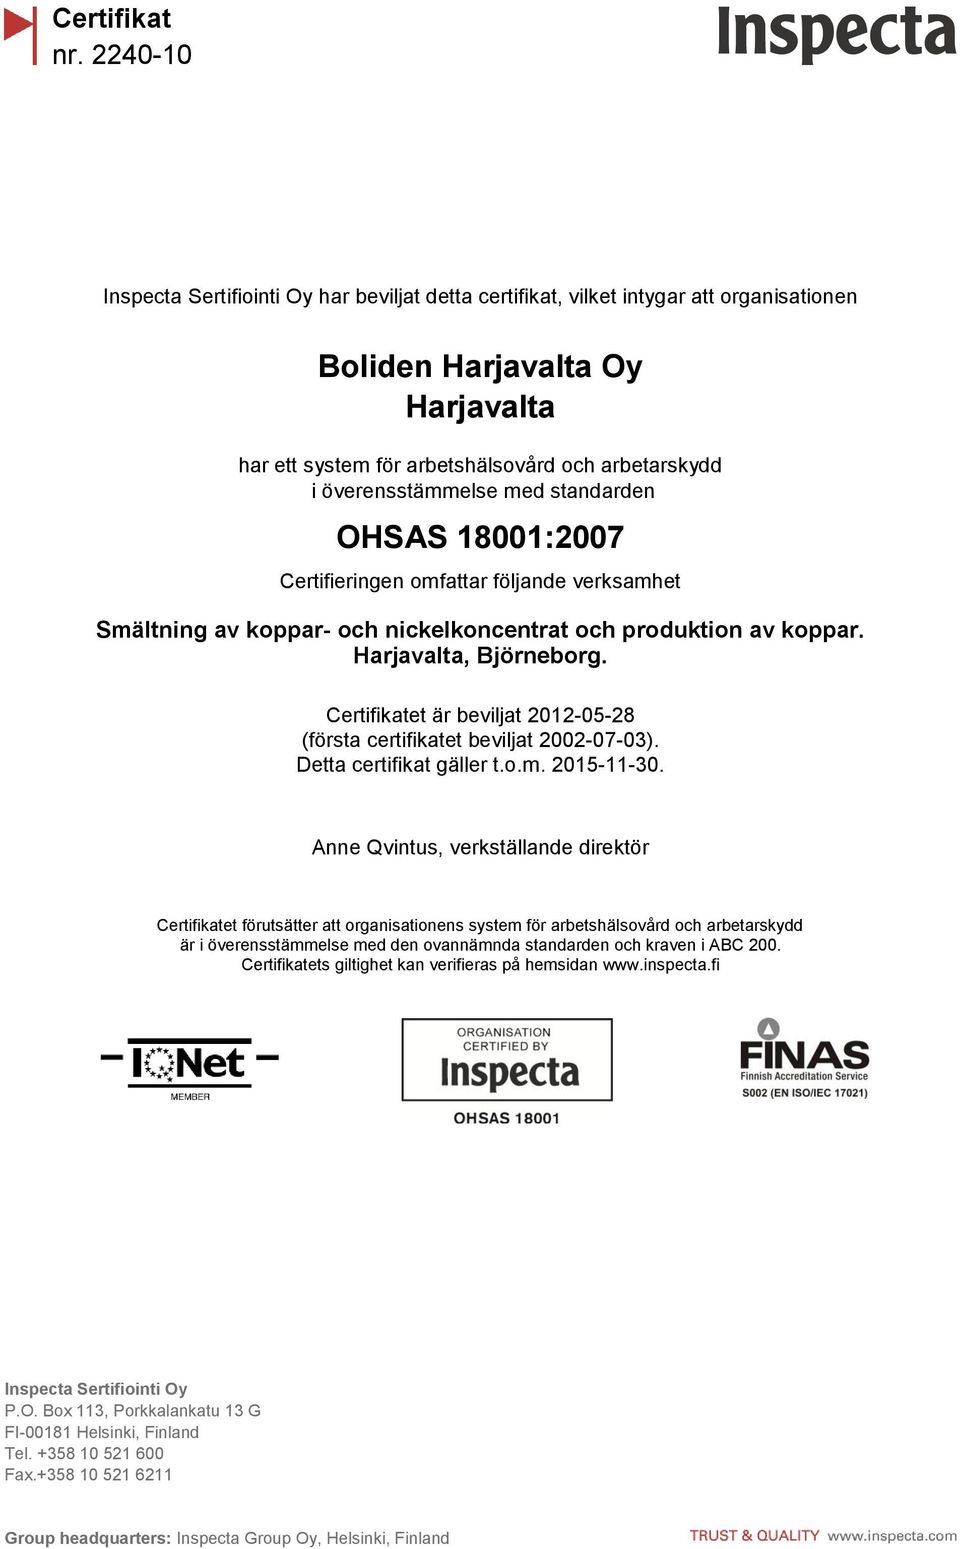 2012-05-28 (första certifikatet beviljat 2002-07-03). Detta certifikat gäller t.o.m. 2015-11-30.